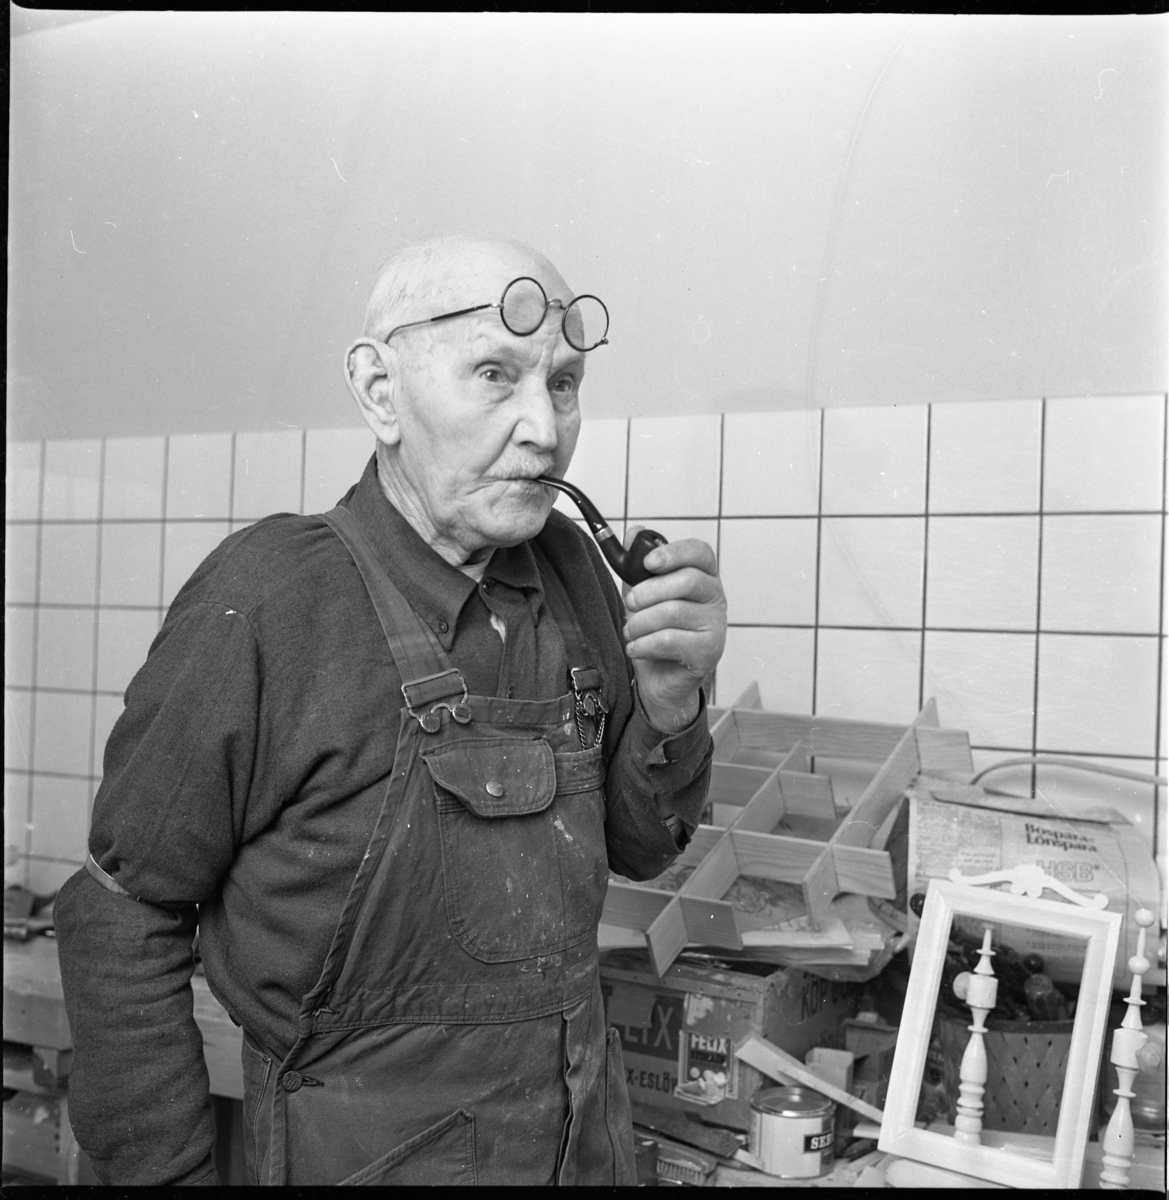 Korgmakaren Emil Lund, 91 år, står i snickarbyxor med runda glasögon uppdragna i pannan och pipa i munnen.